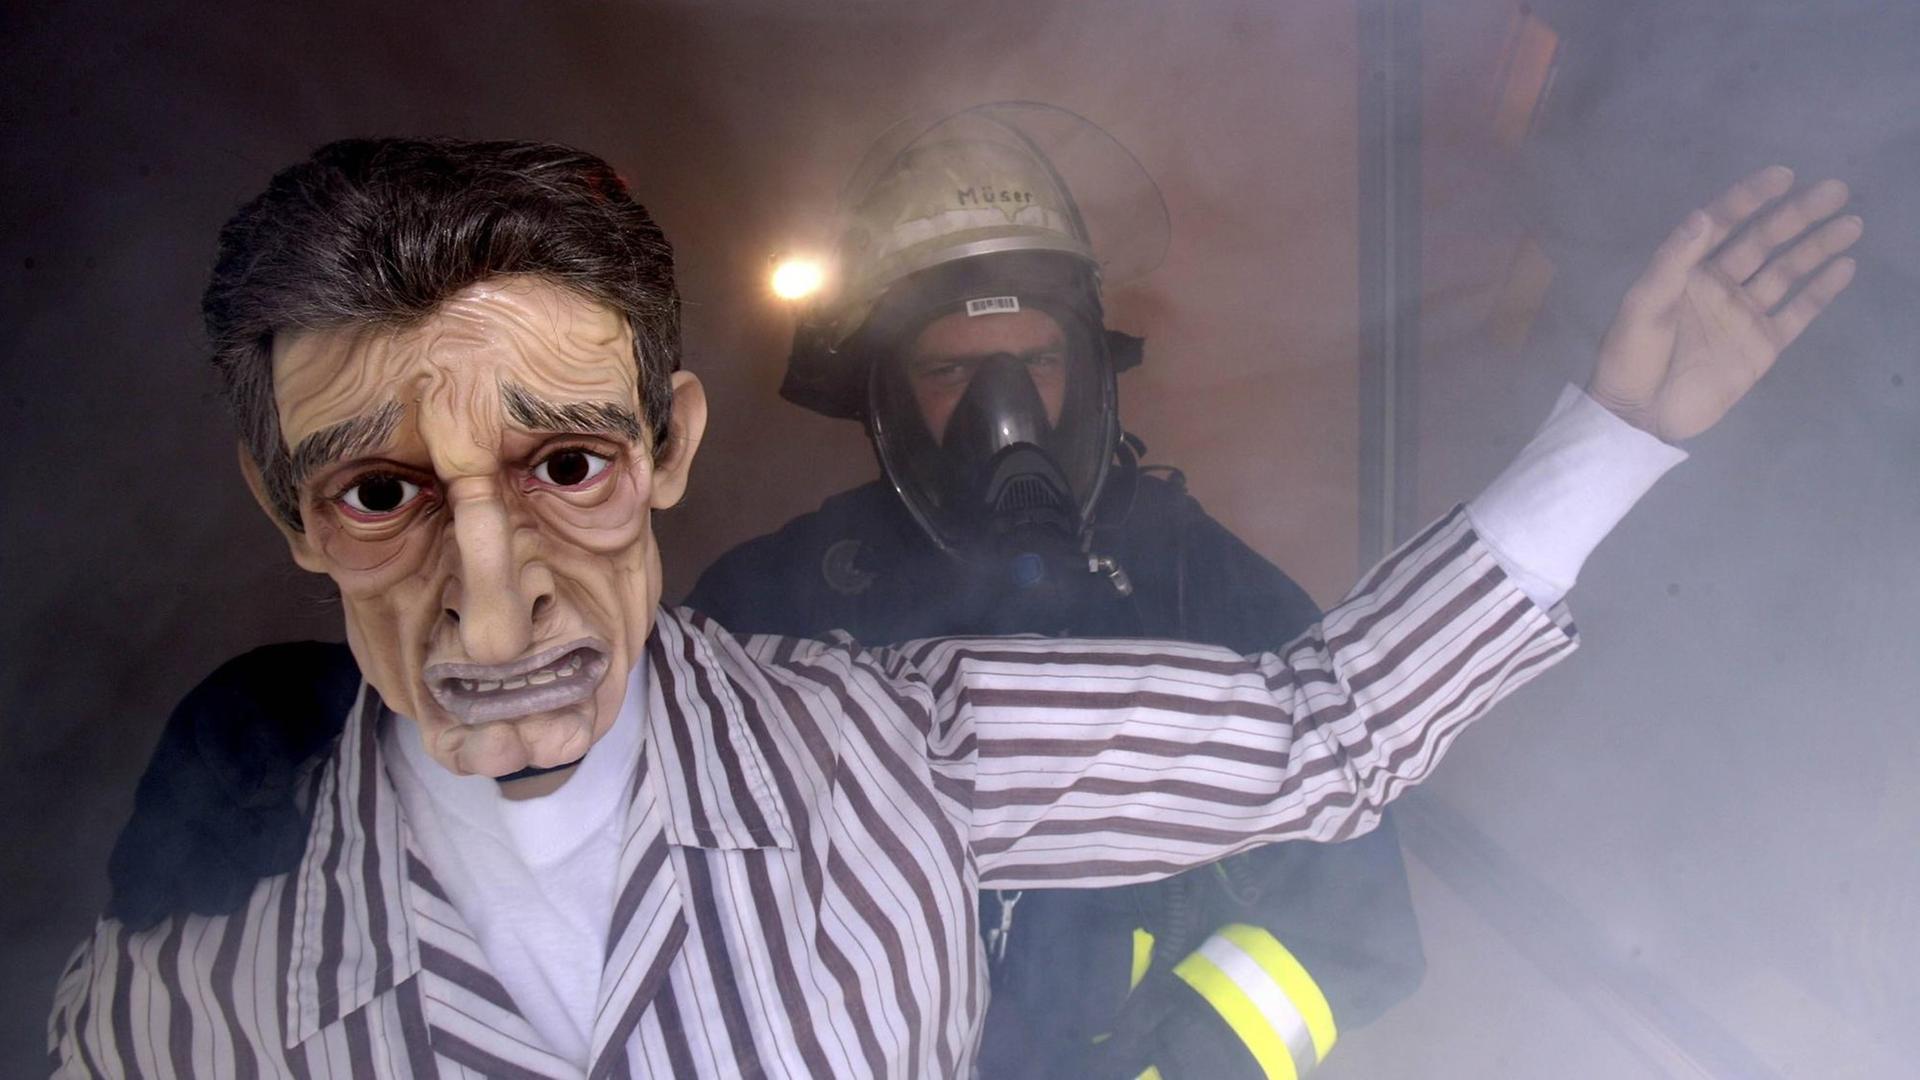 Ein Feuerwehrmann mit Atemschutz und eine lebensgroße Puppe stehen an einem Fenster, in der Luft hängt dichter Rauch